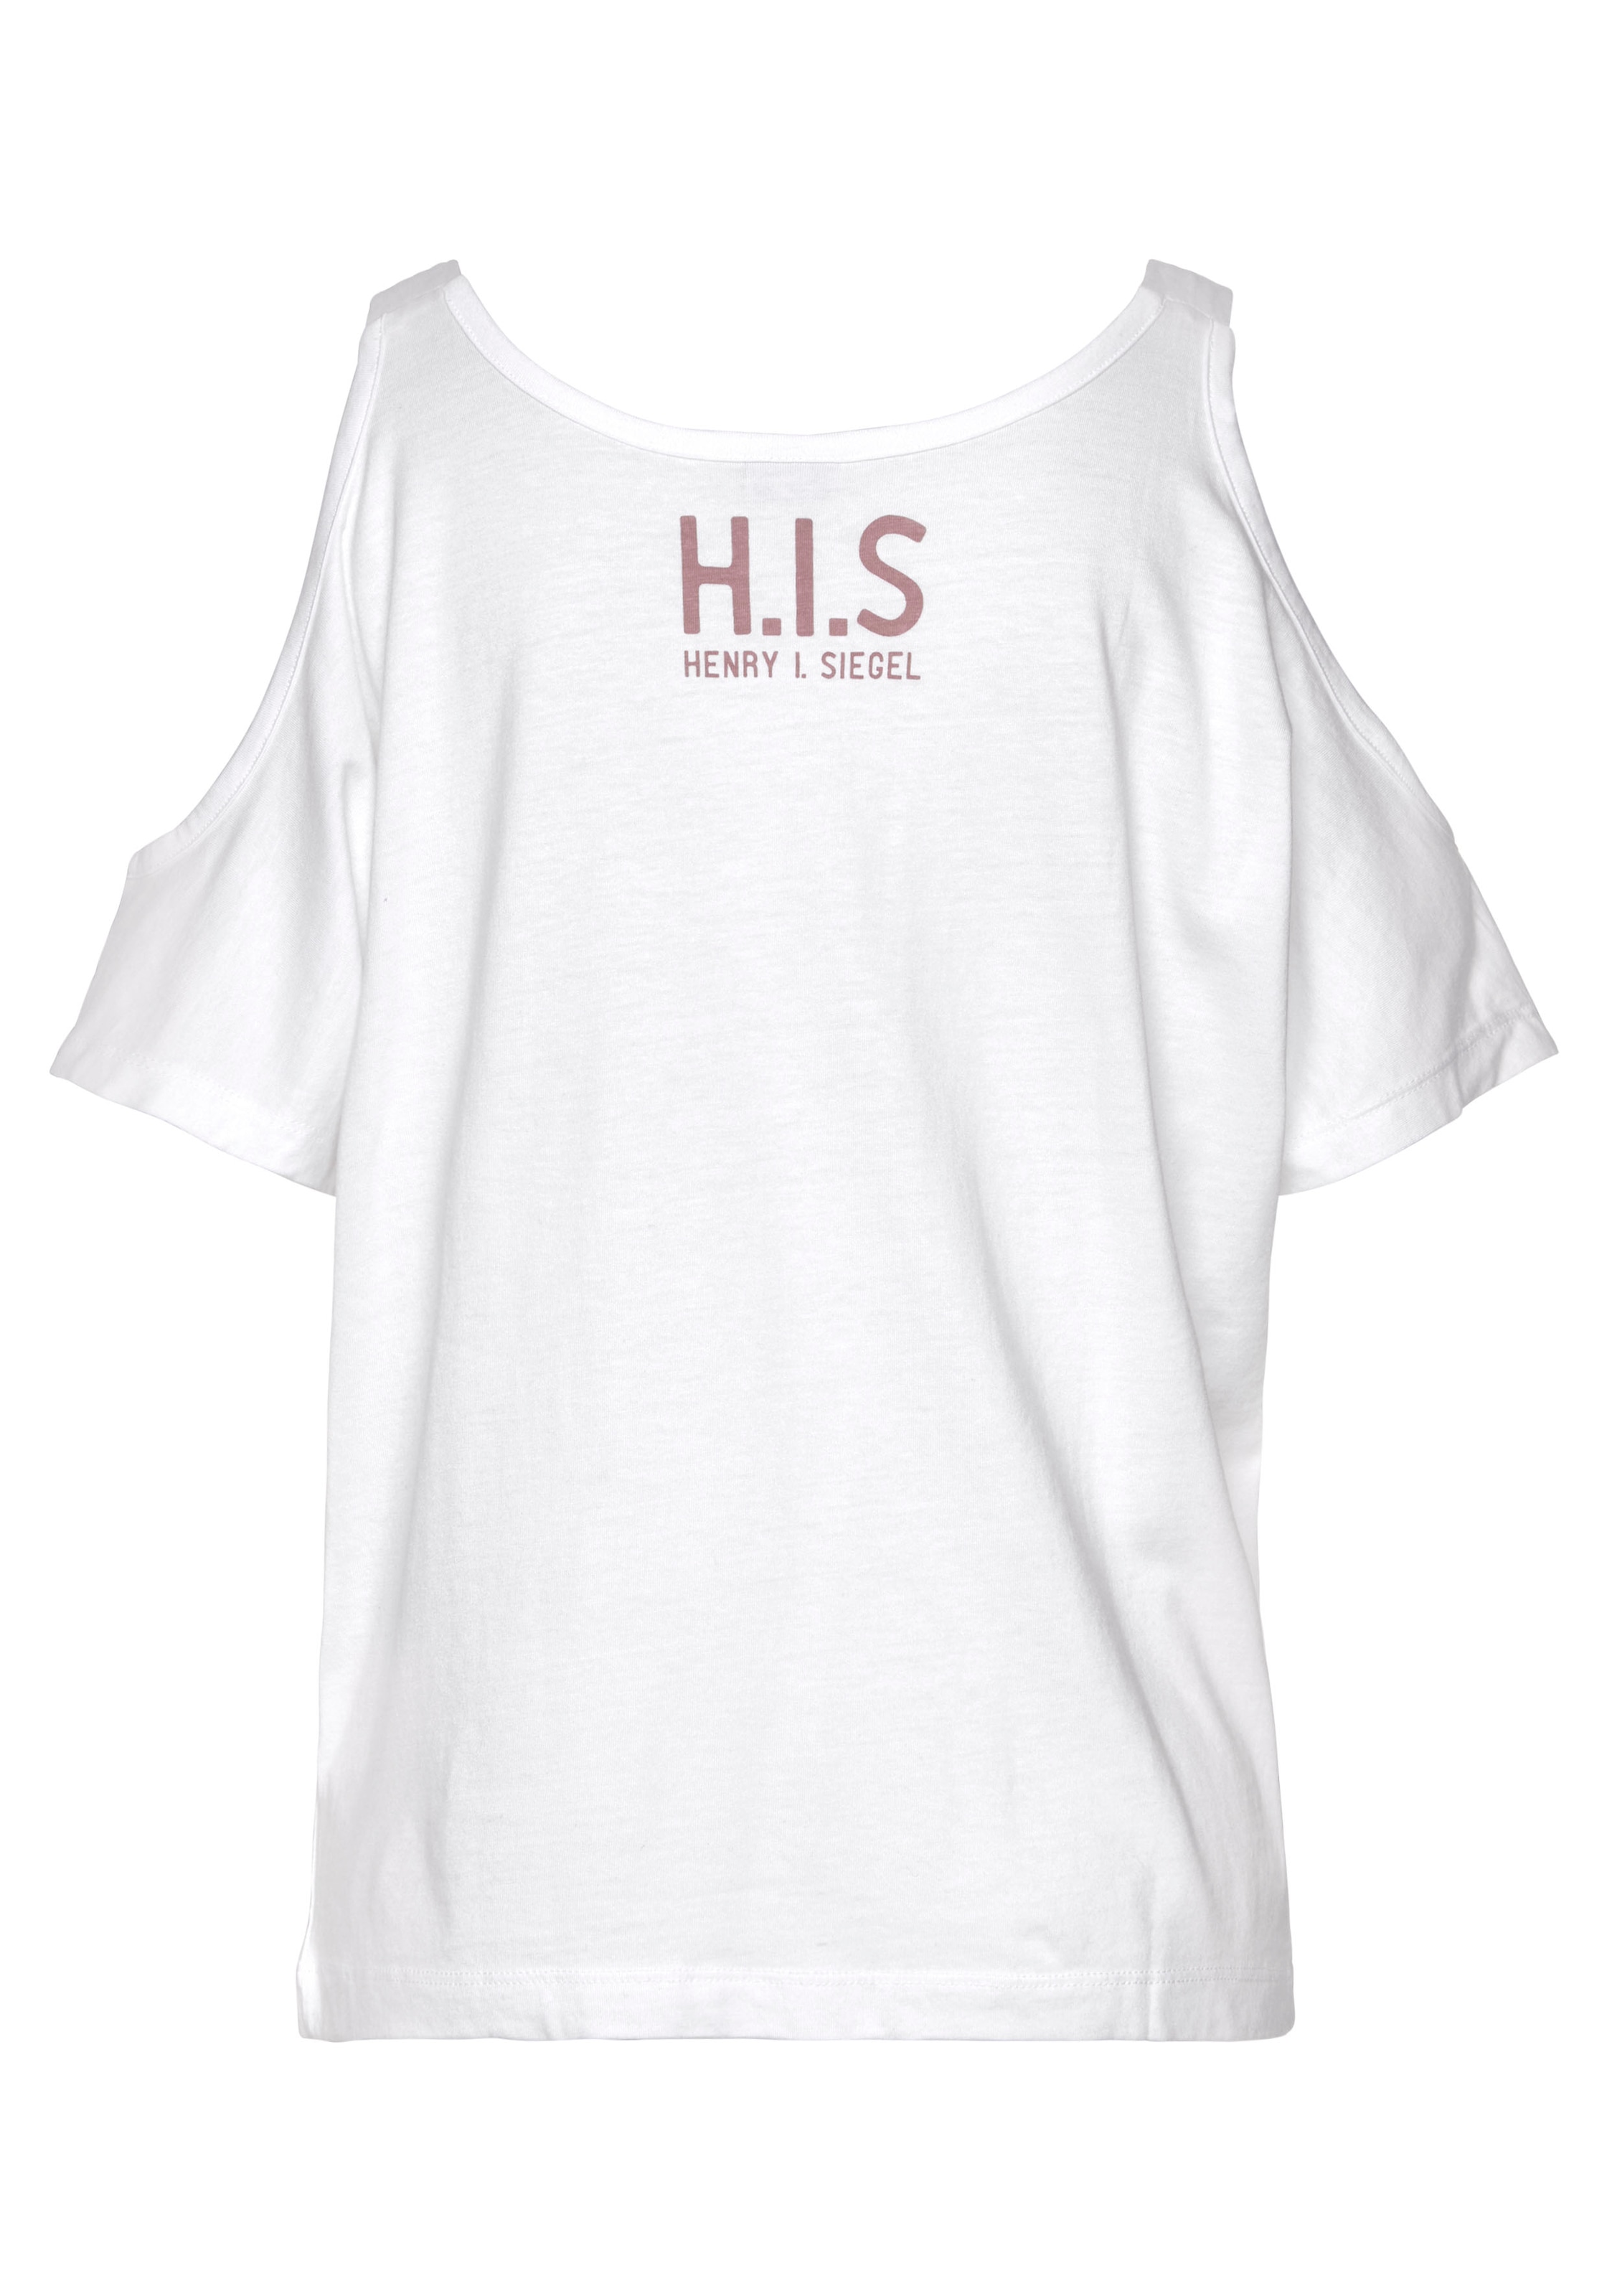 H.I.S Kurzarmshirt, mit Logoprint hinten und Cut-Outs an den Schultern, Baumwoll-Mix